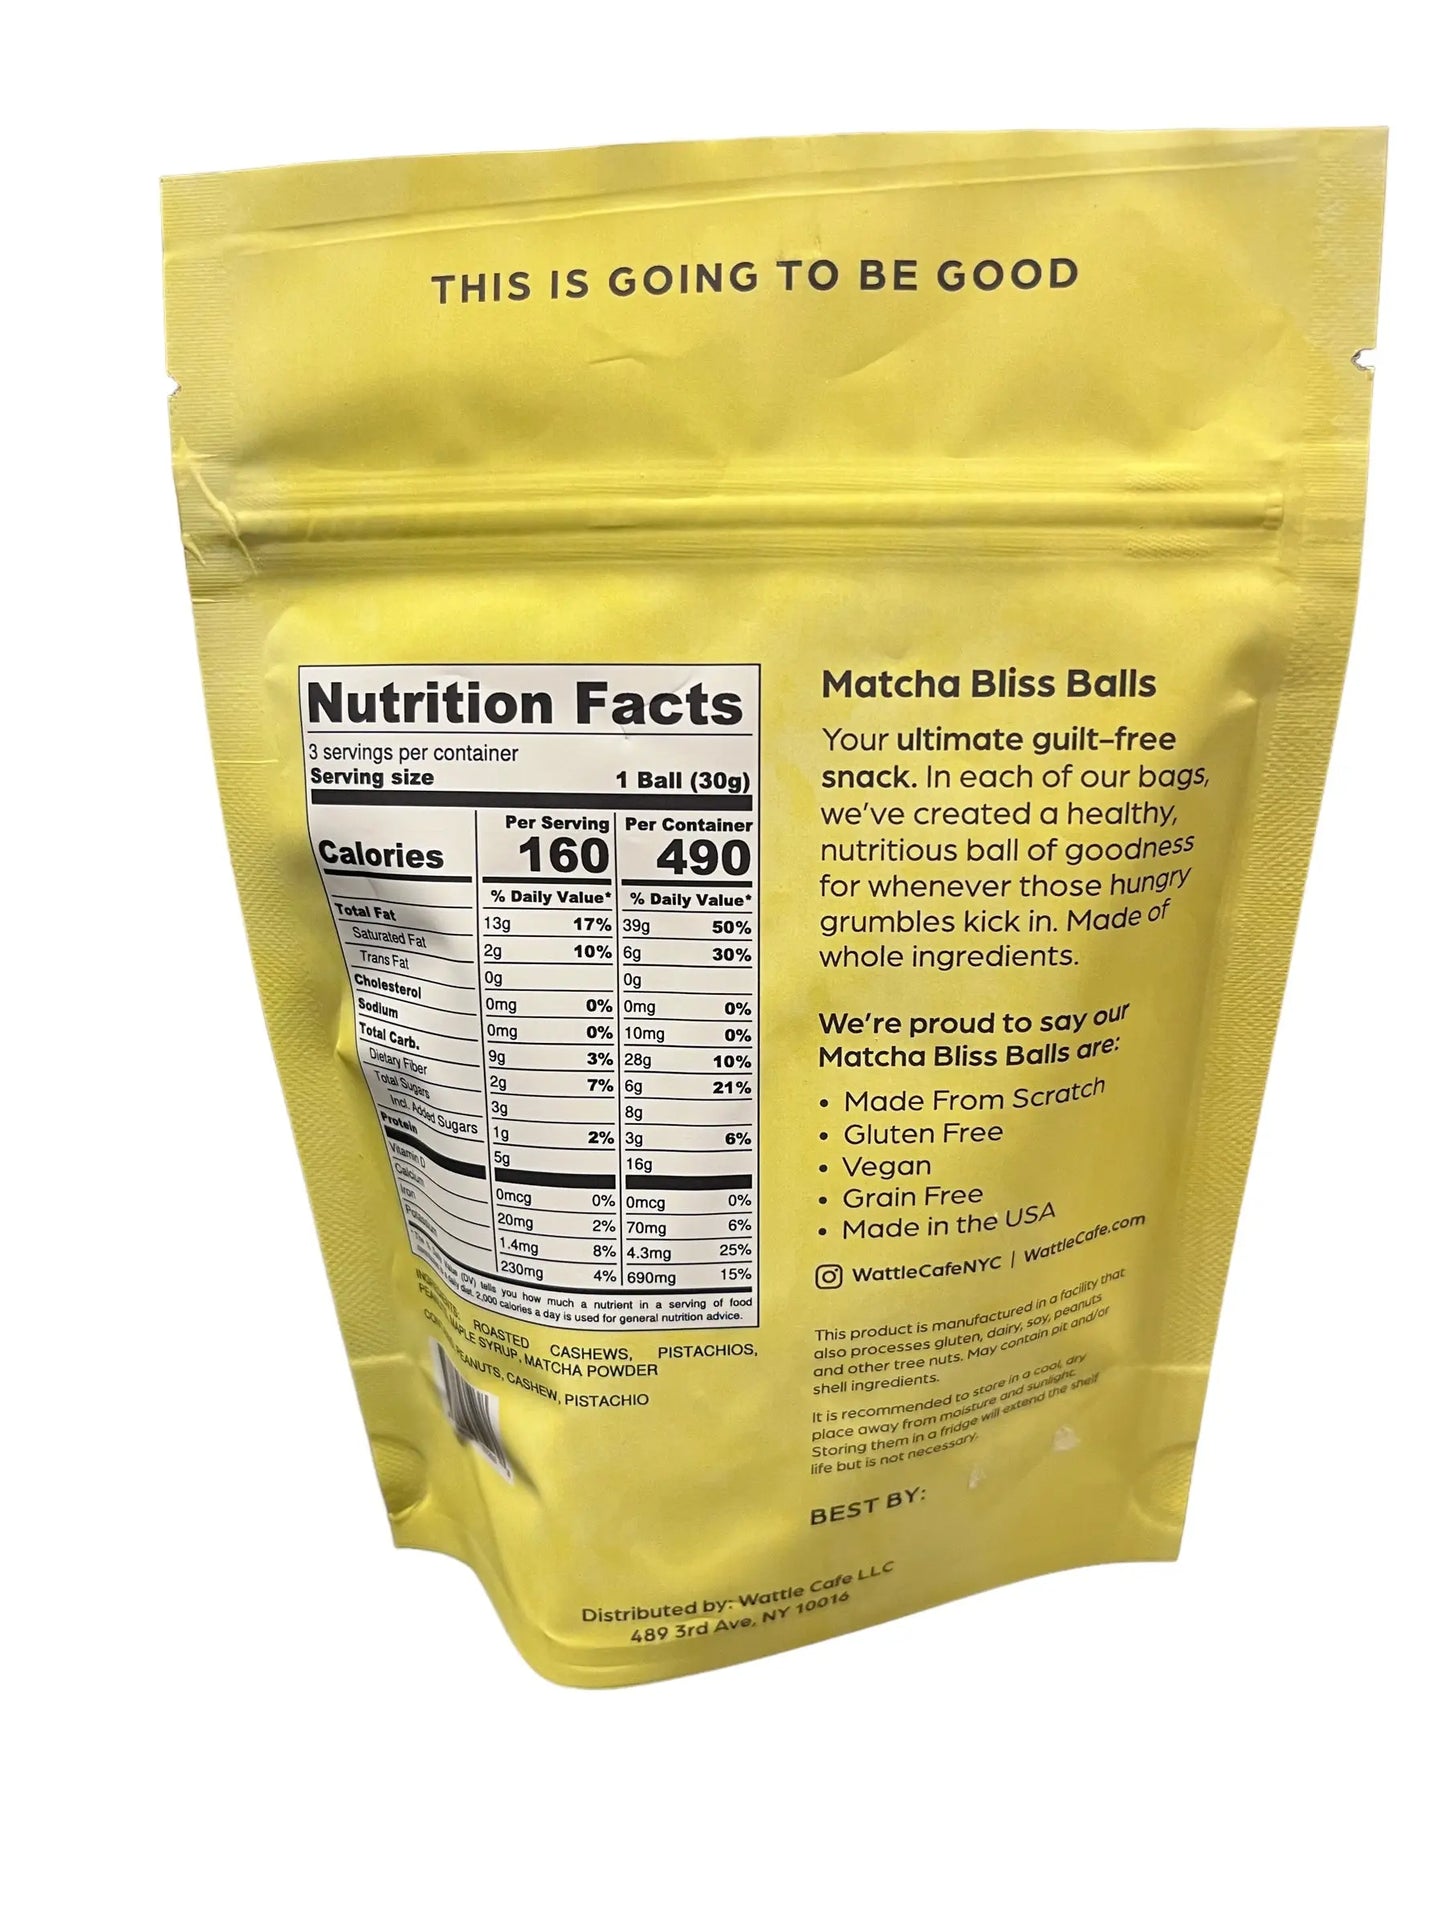 Matcha Bliss Bites back of Bag including nutritional panel